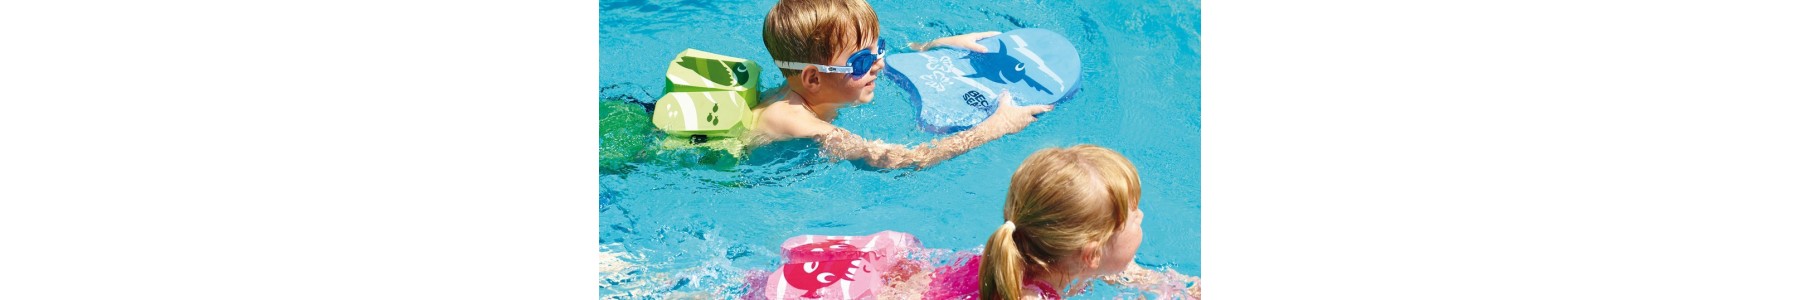 Nuoto per bambini disabili Utile per il gioco e la terapia